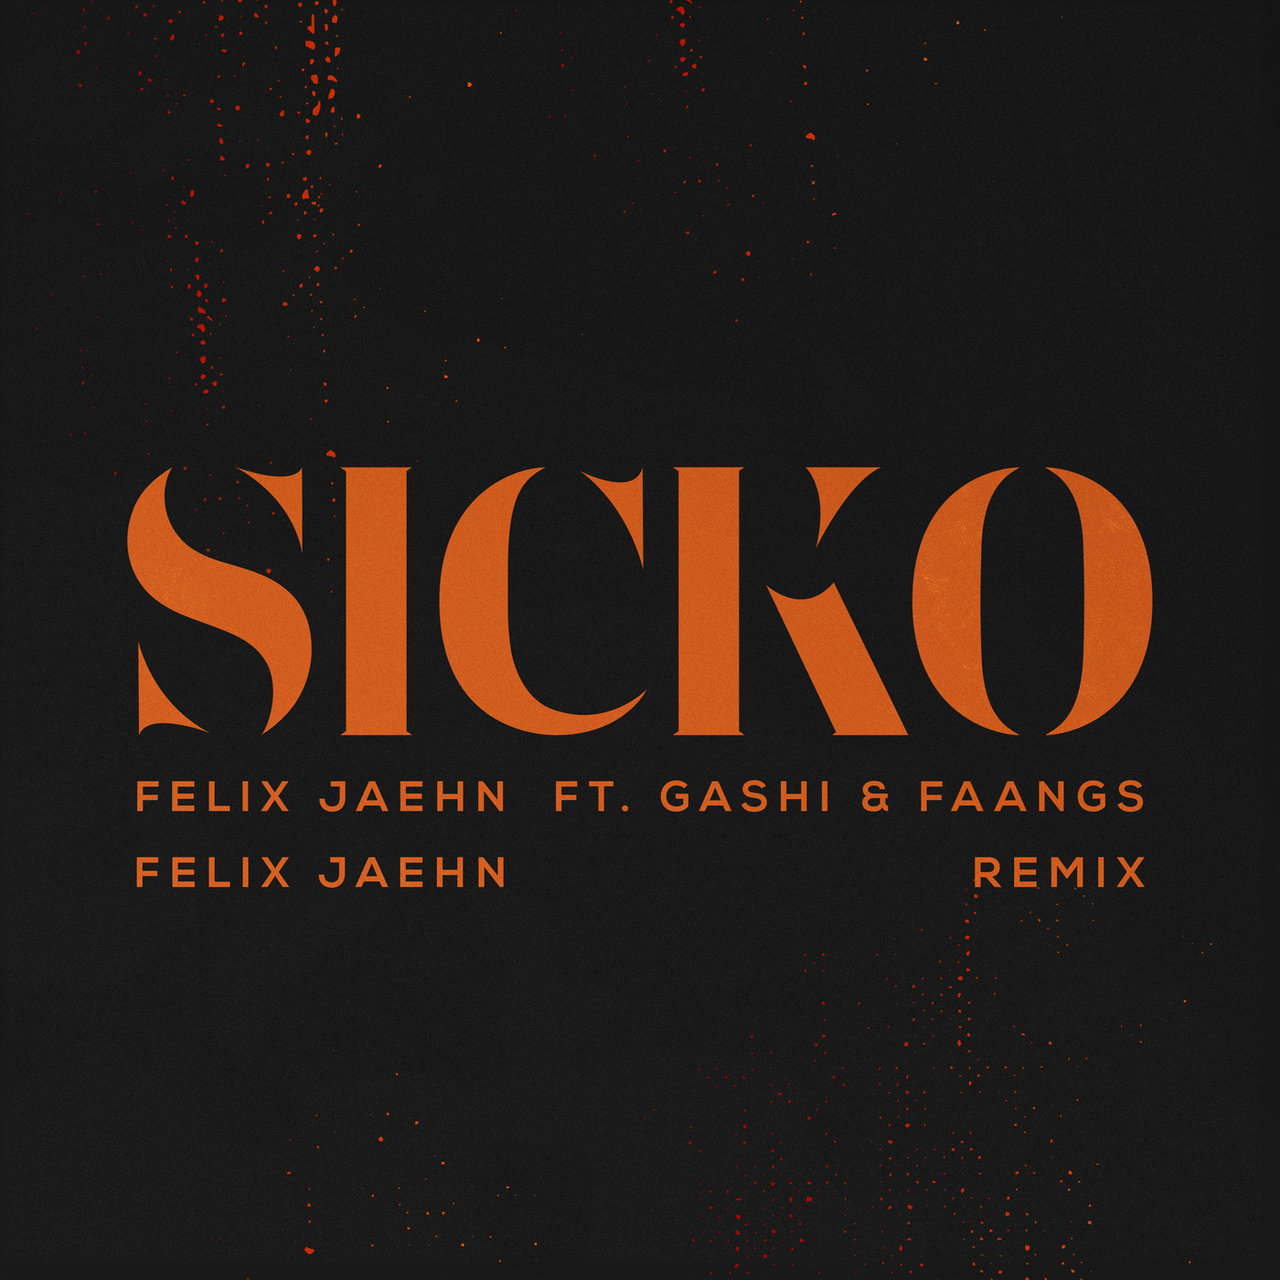 Felix Jaehn featuring GASHI & FAANGS — SICKO (Felix Jaehn Remix) cover artwork